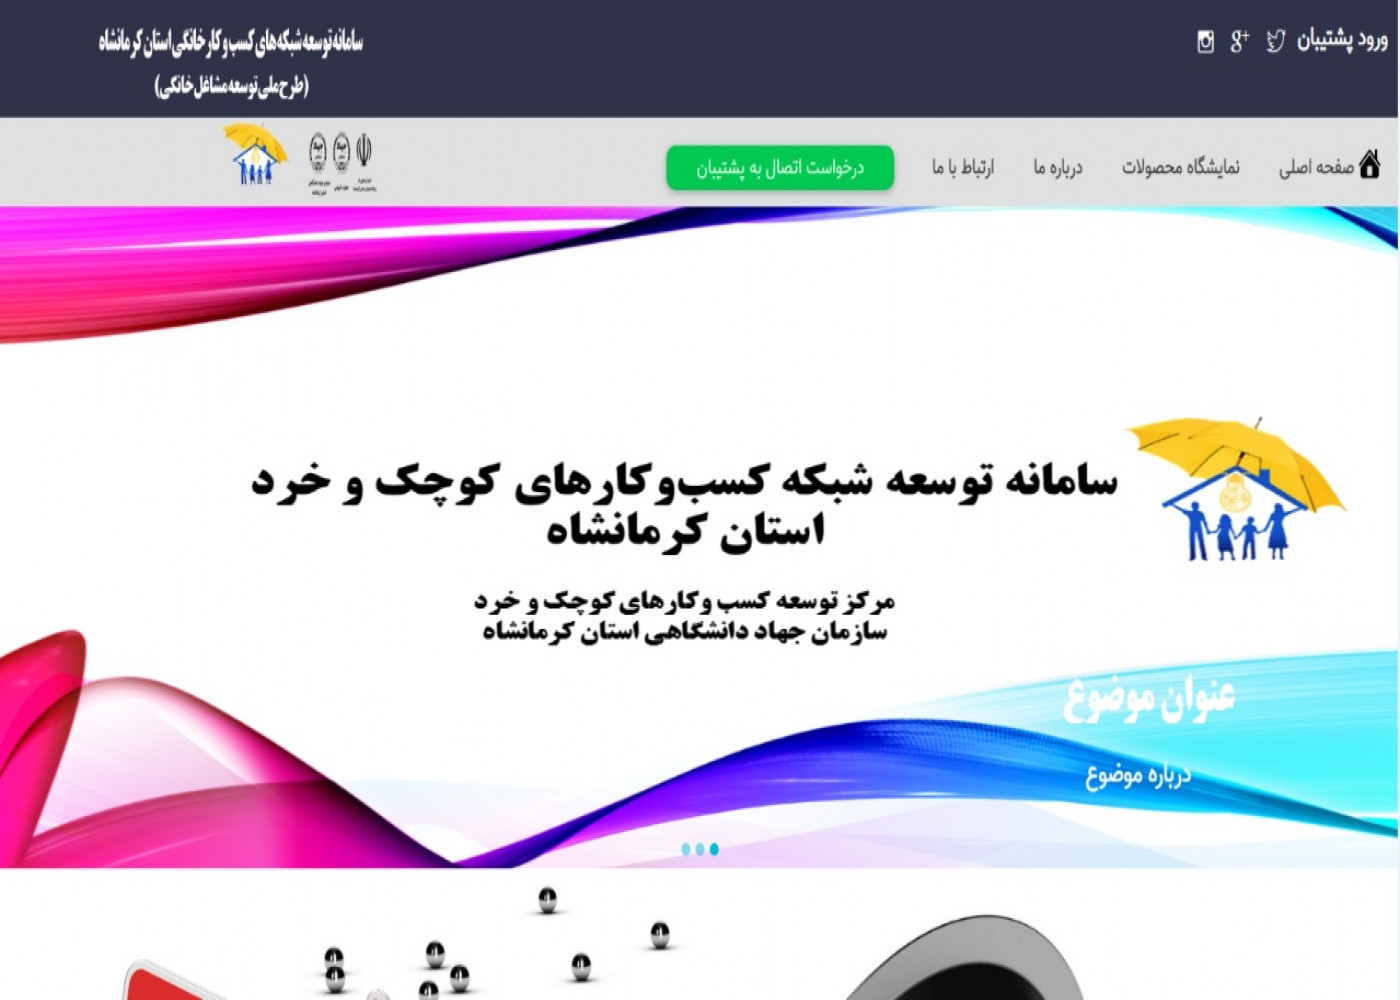 ایجاد بستر الکترونیکی اتصال به پیشران-سازمان جهاددانشگاهی استان کرمانشاه